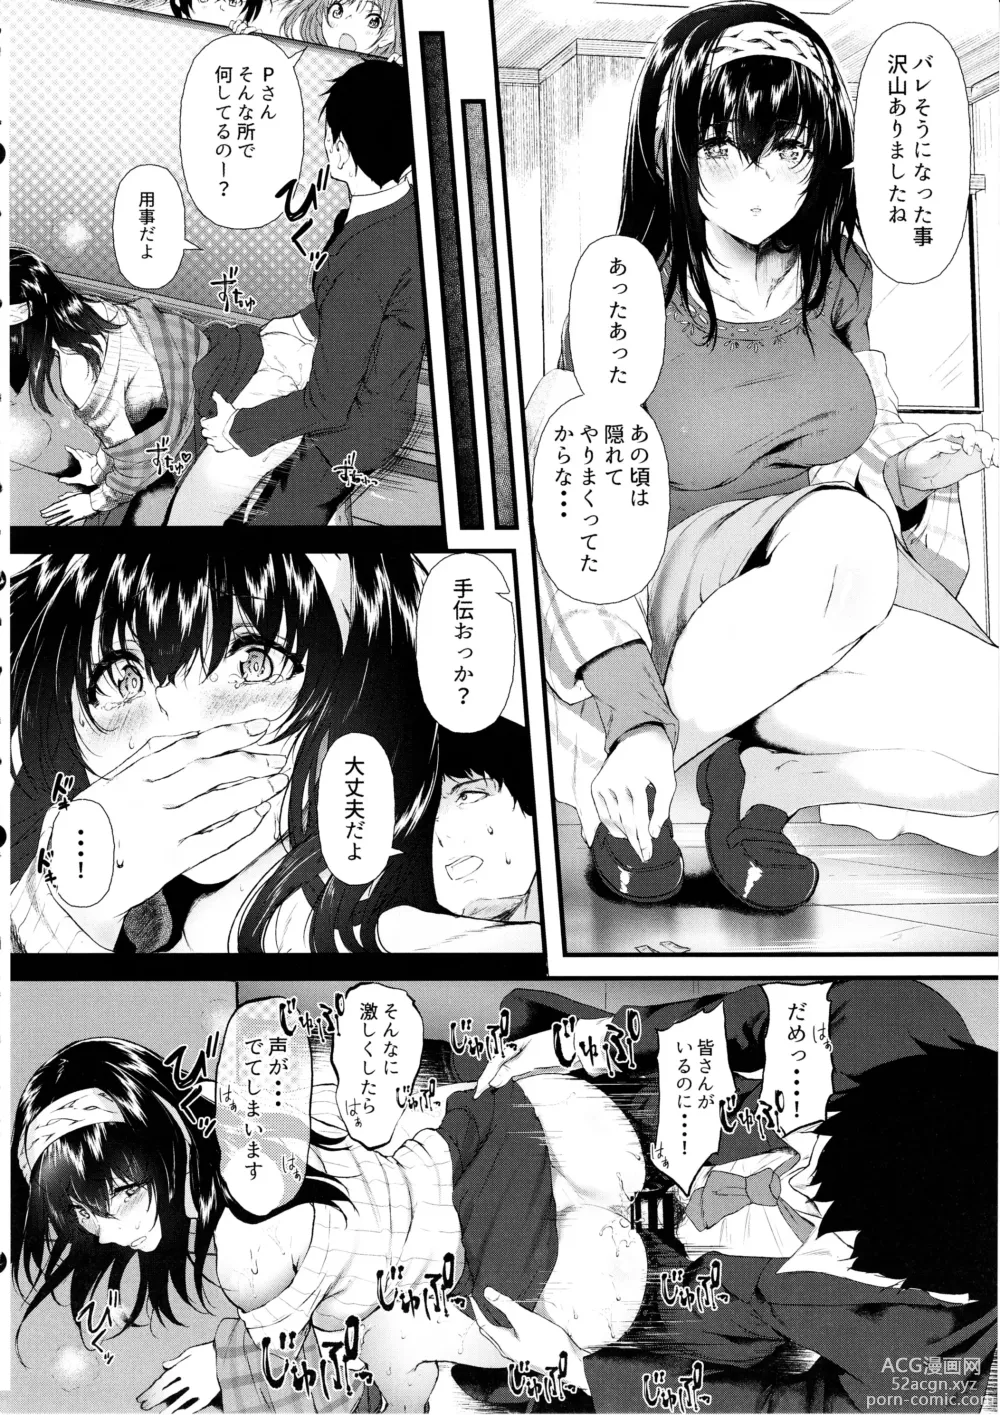 Page 7 of doujinshi Omoide wa Itsumo Kagayaite